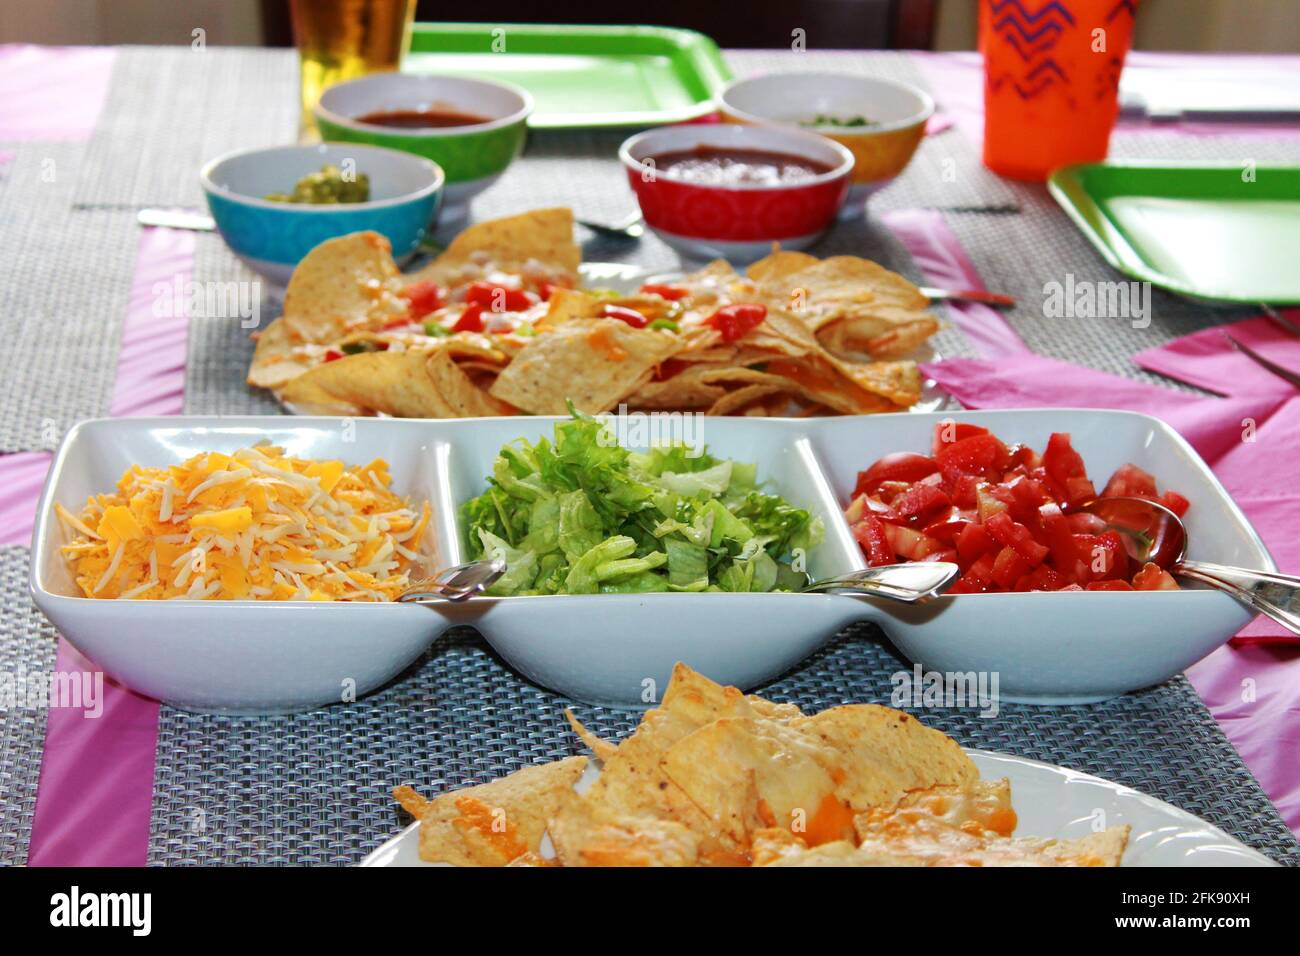 Nahaufnahme eines Tischsets für eine Party, mit Nachos, einem Teller mit Taco-Belägen, einem rosa Tischtuch und Servietten, Platzmatten und Pappteller. Stockfoto